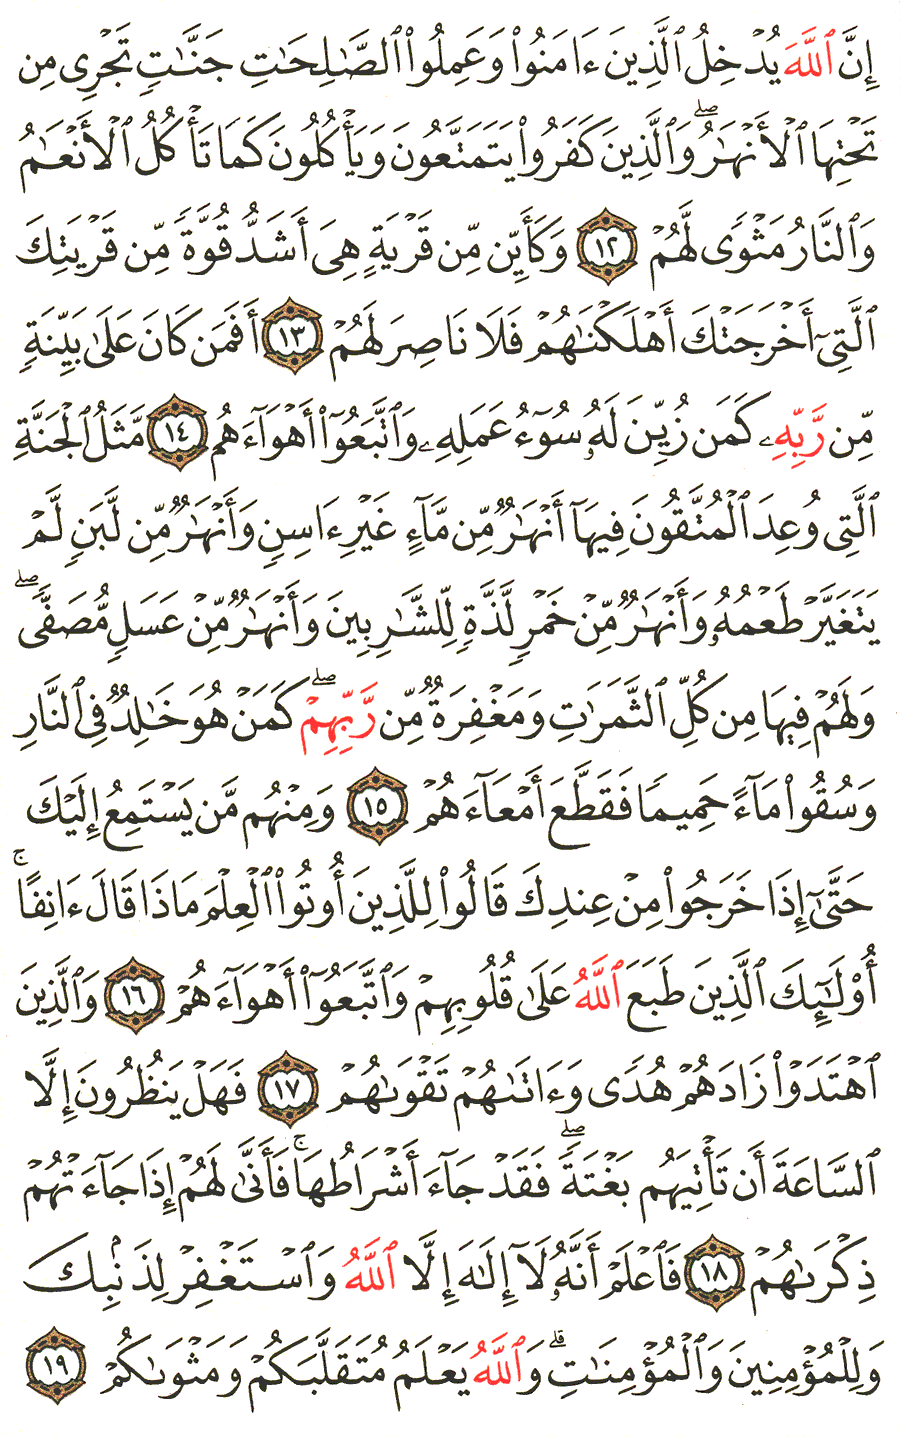 الصفحة رقم 508 من القرآن الكريم مكتوبة من المصحف